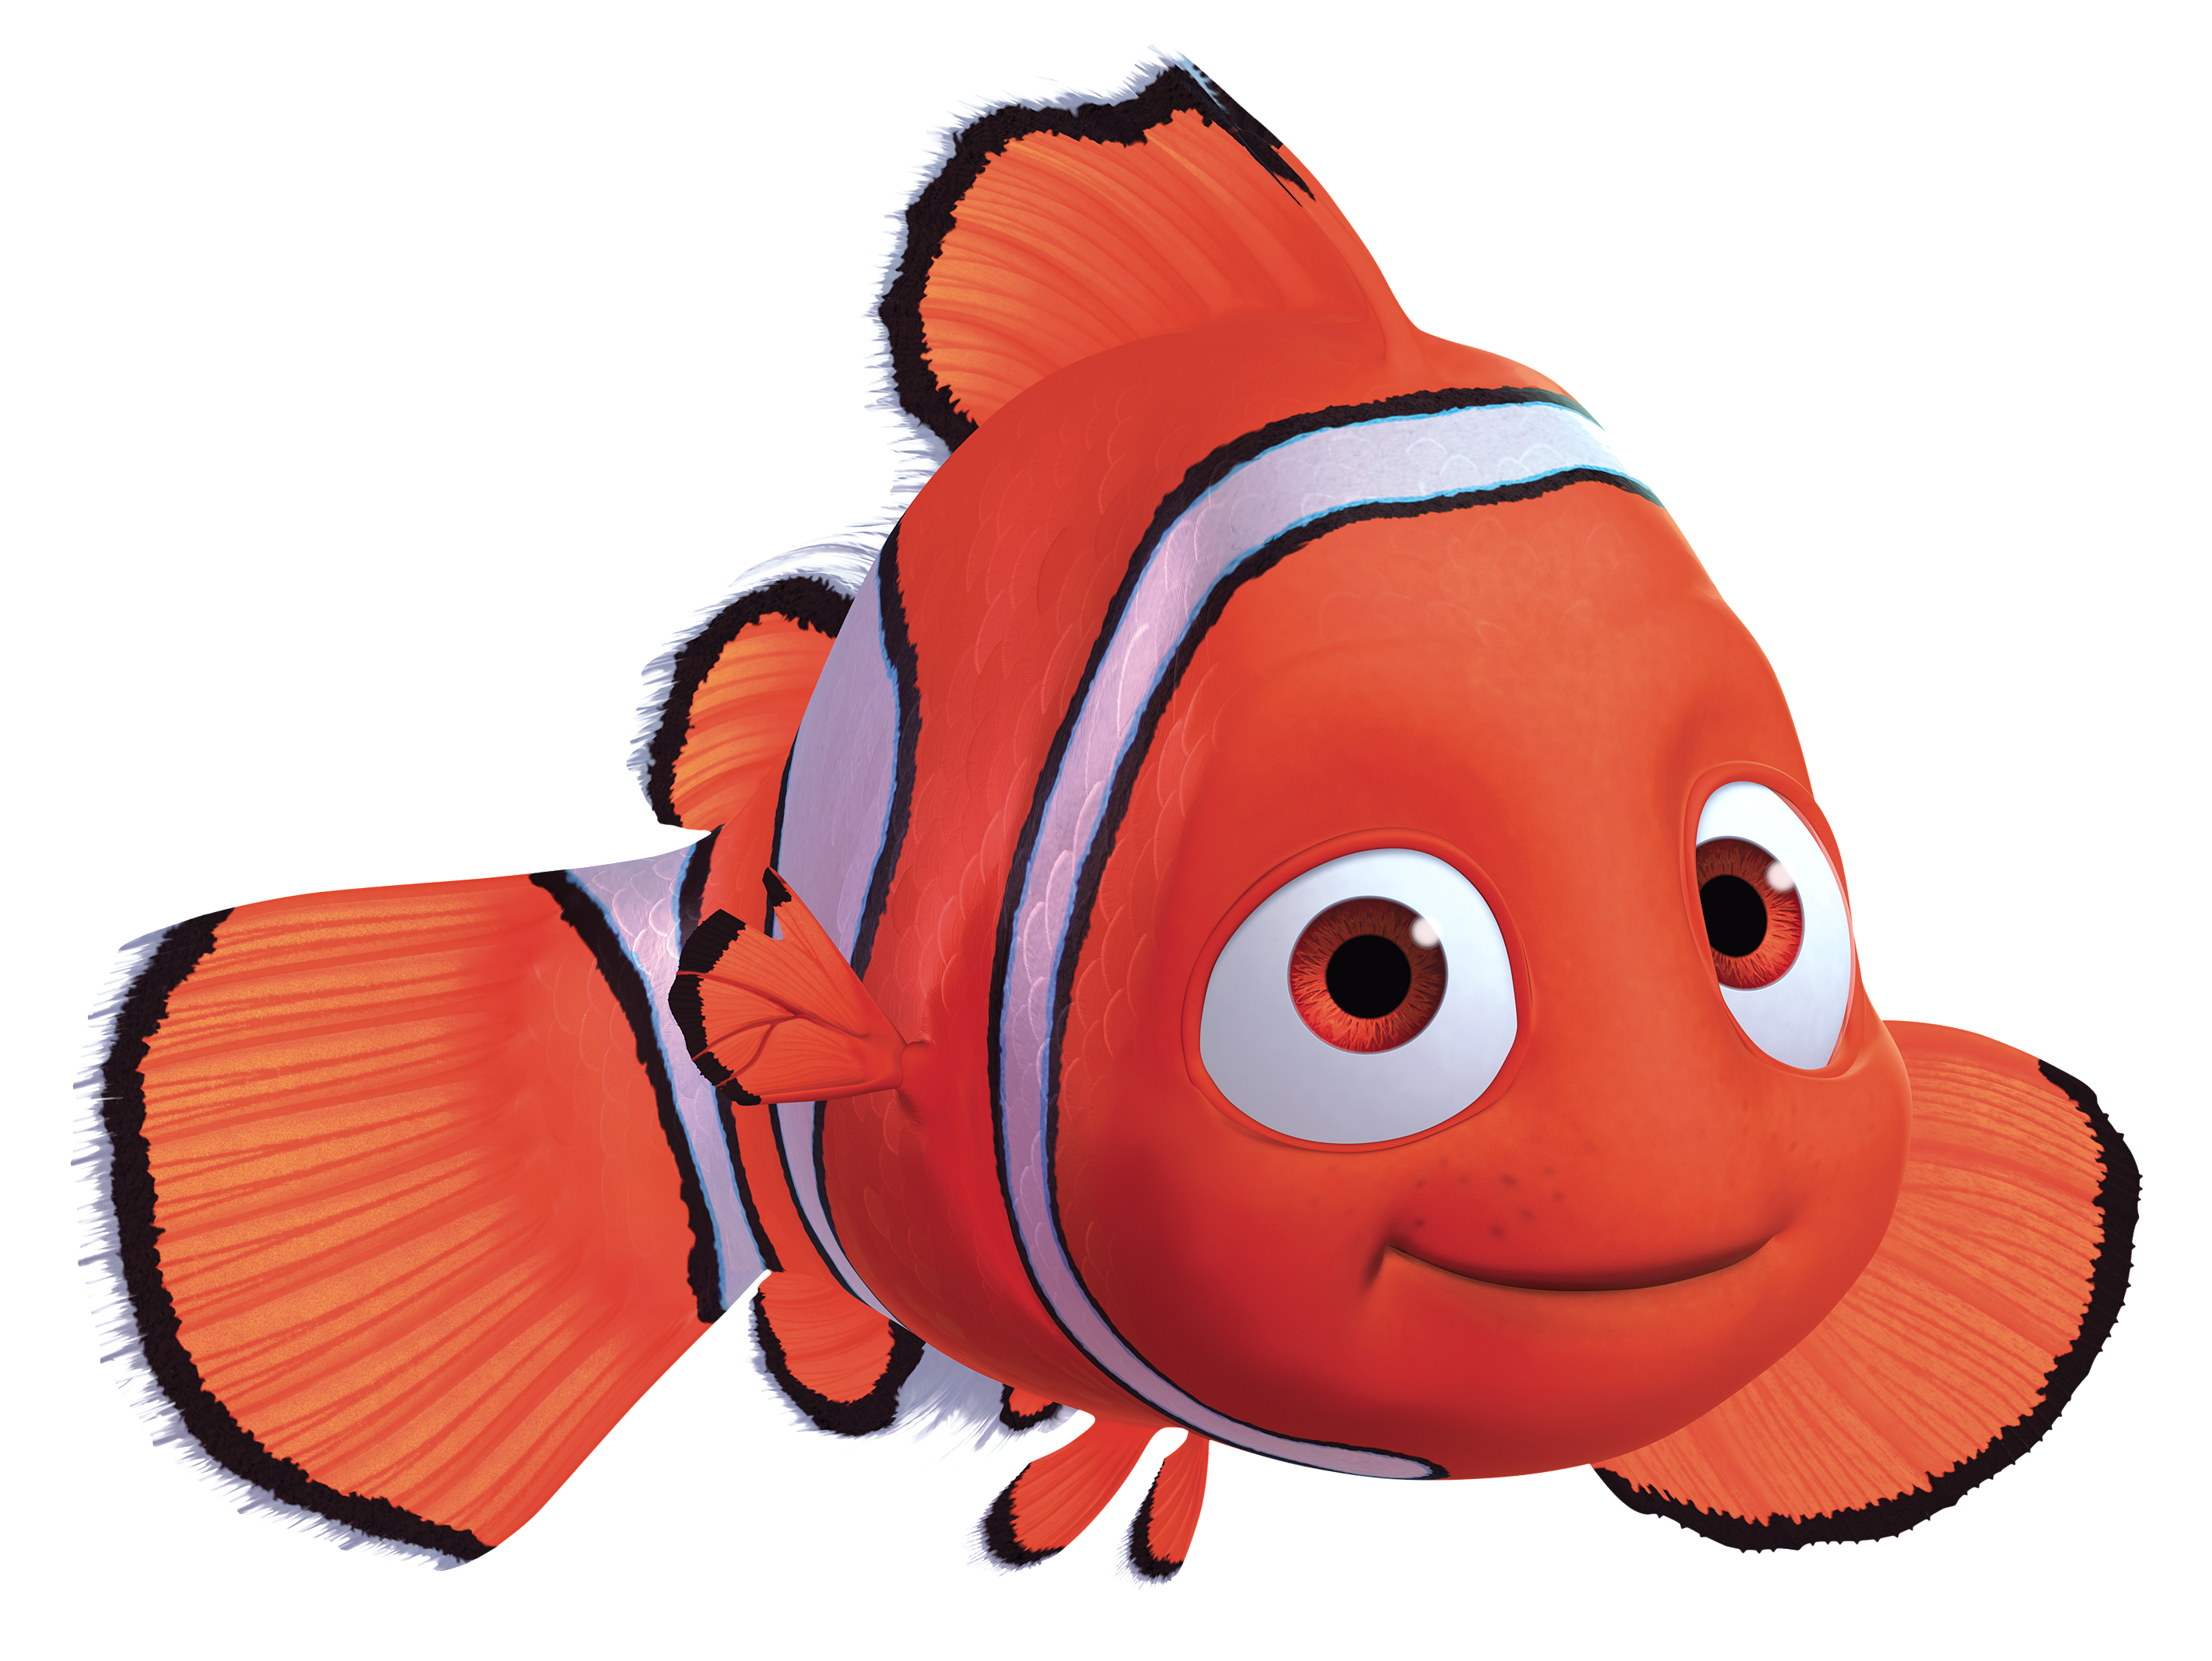 Nemo - Disney Wiki